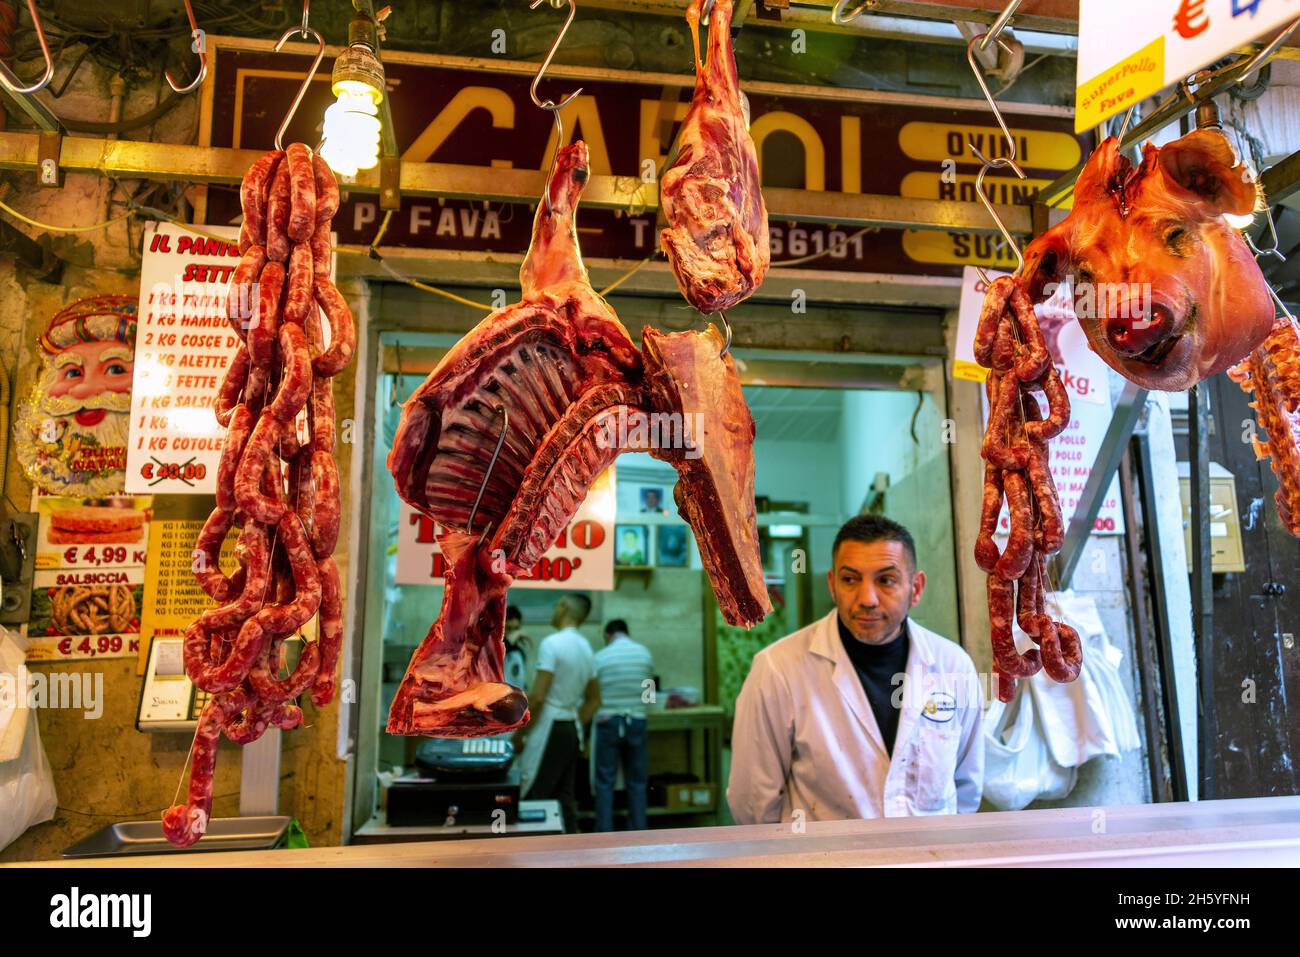 PALERMO, ITALIA- ABRIL 28 2018: Carnicero y carne en el Mercado Ballaro en Palermo, Italia Foto de stock